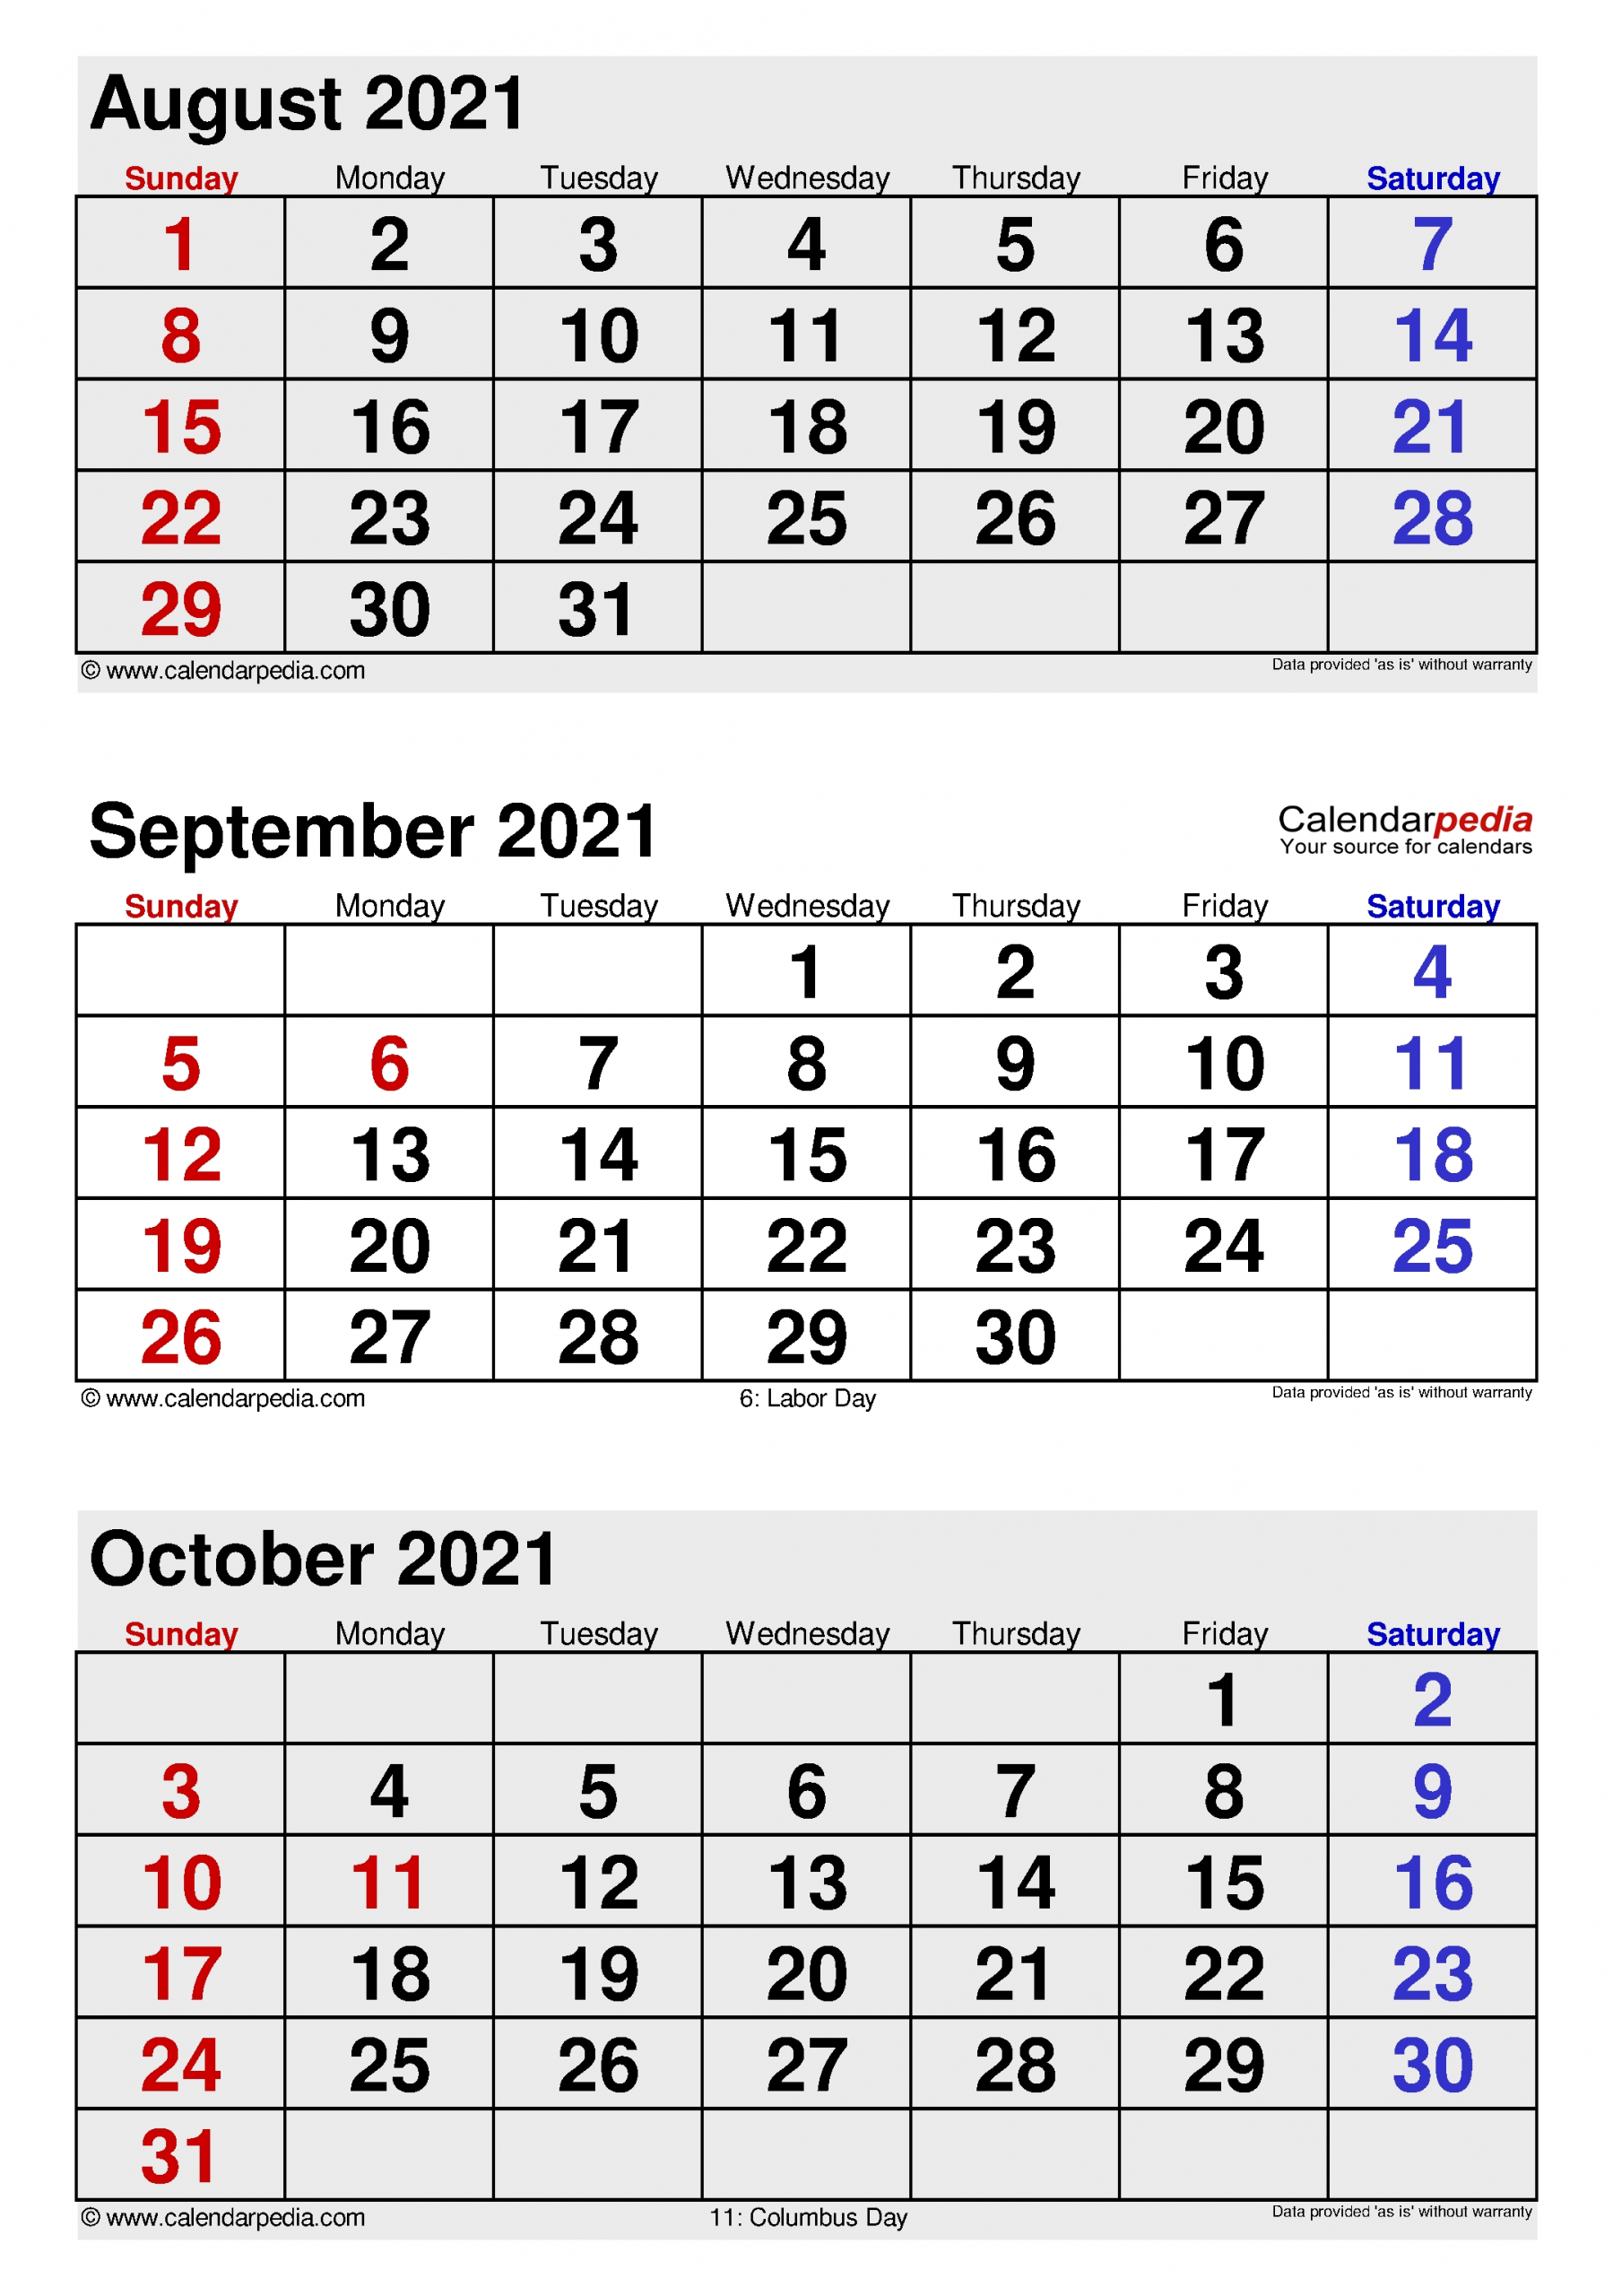 Get Aug Sept Nov 2021